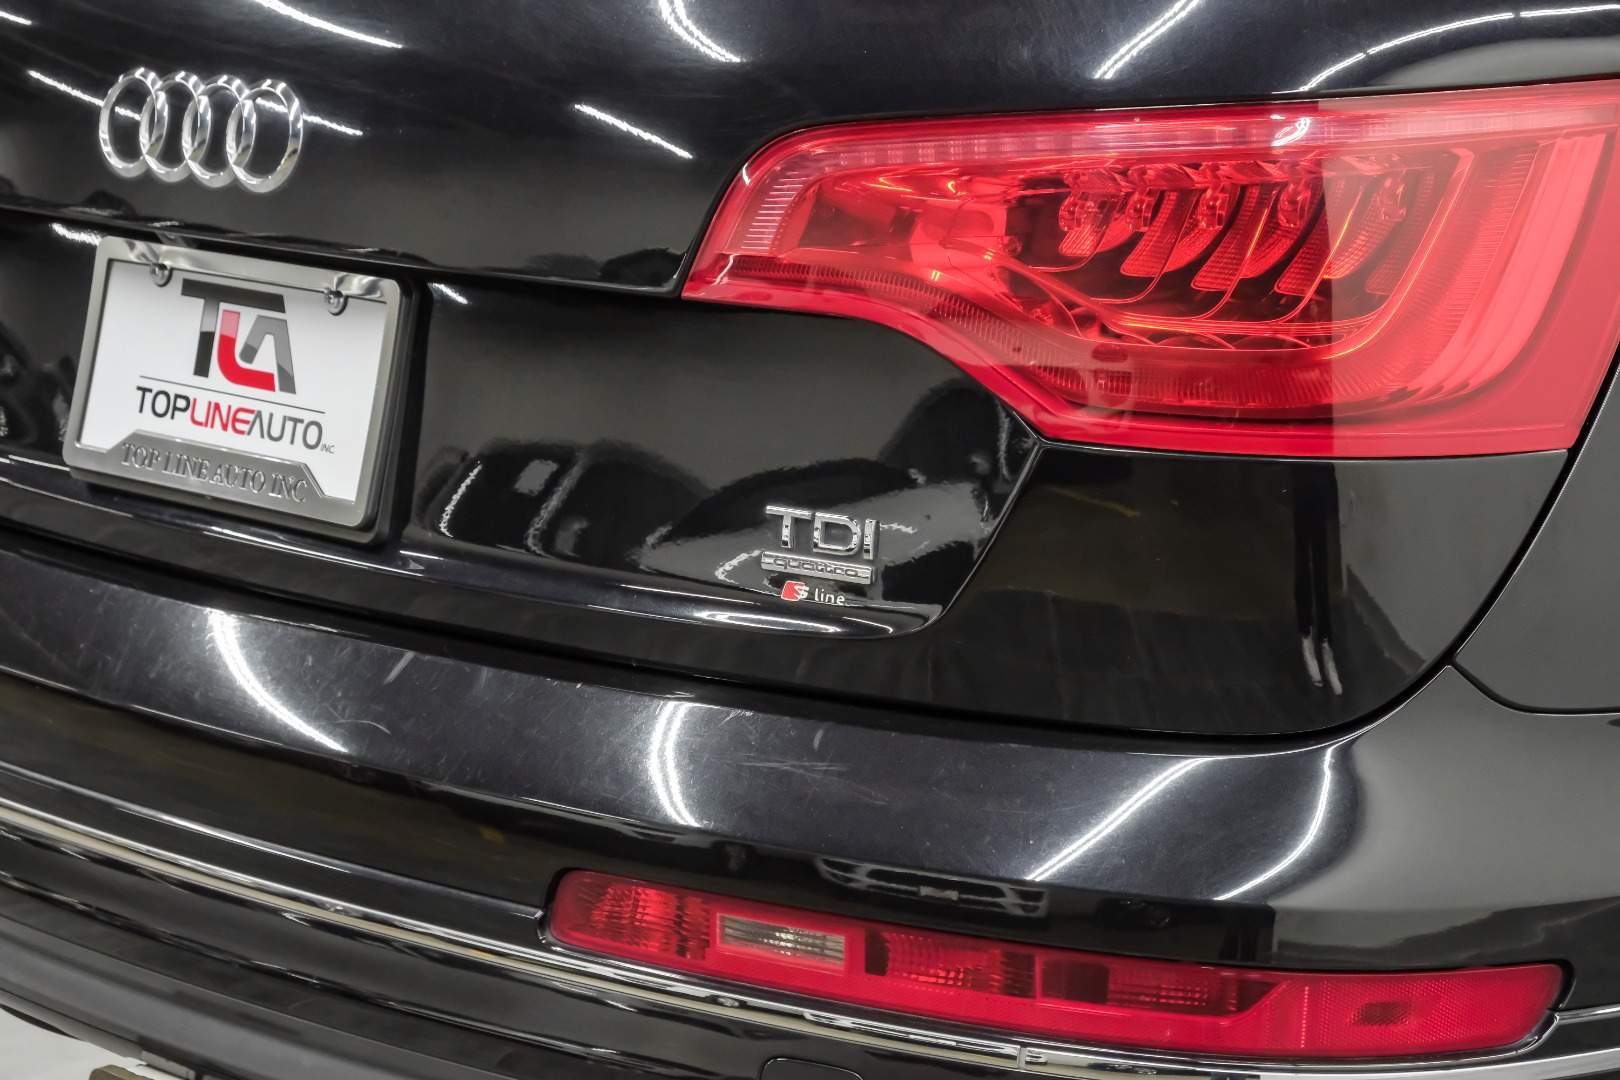 2014 Audi Q7 quattro 4dr 3.0L TDI Prestige 29